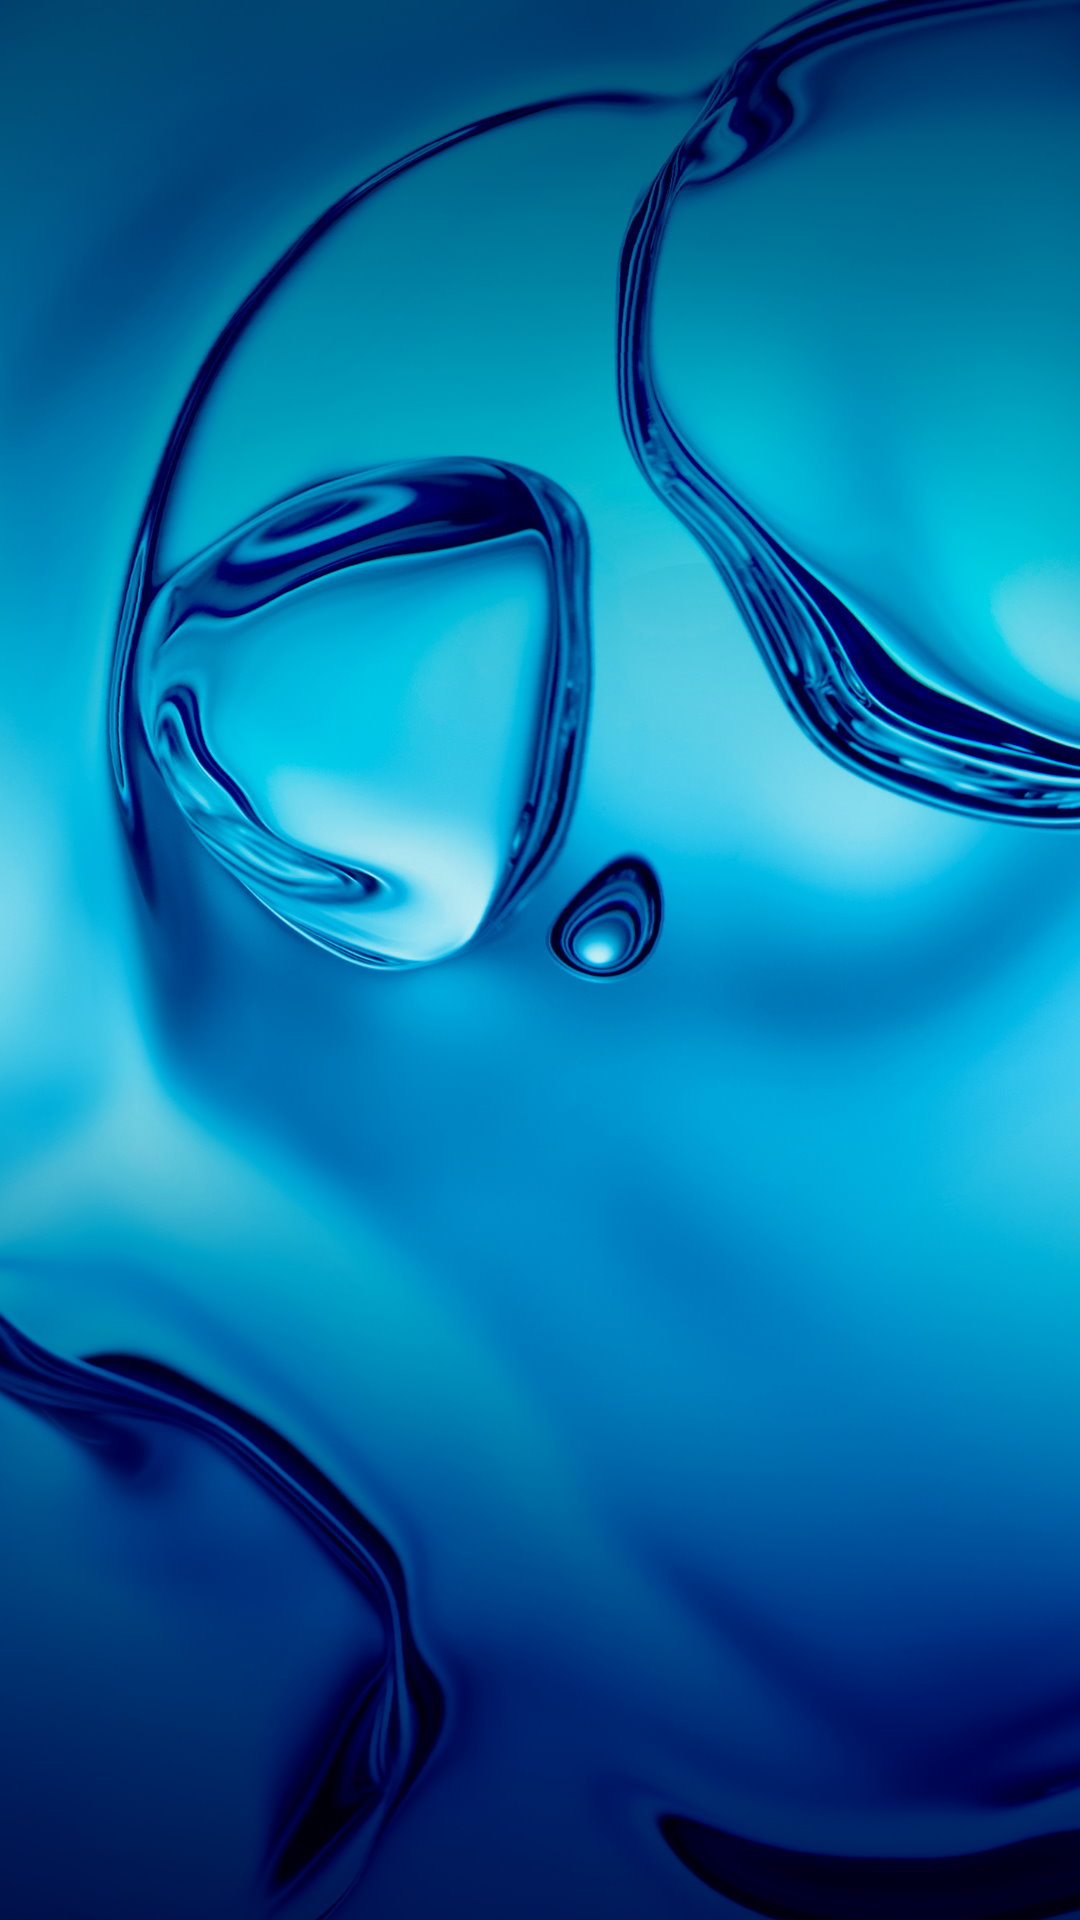 fond d'écran samsung j7,bleu,l'eau,aqua,bleu électrique,liquide